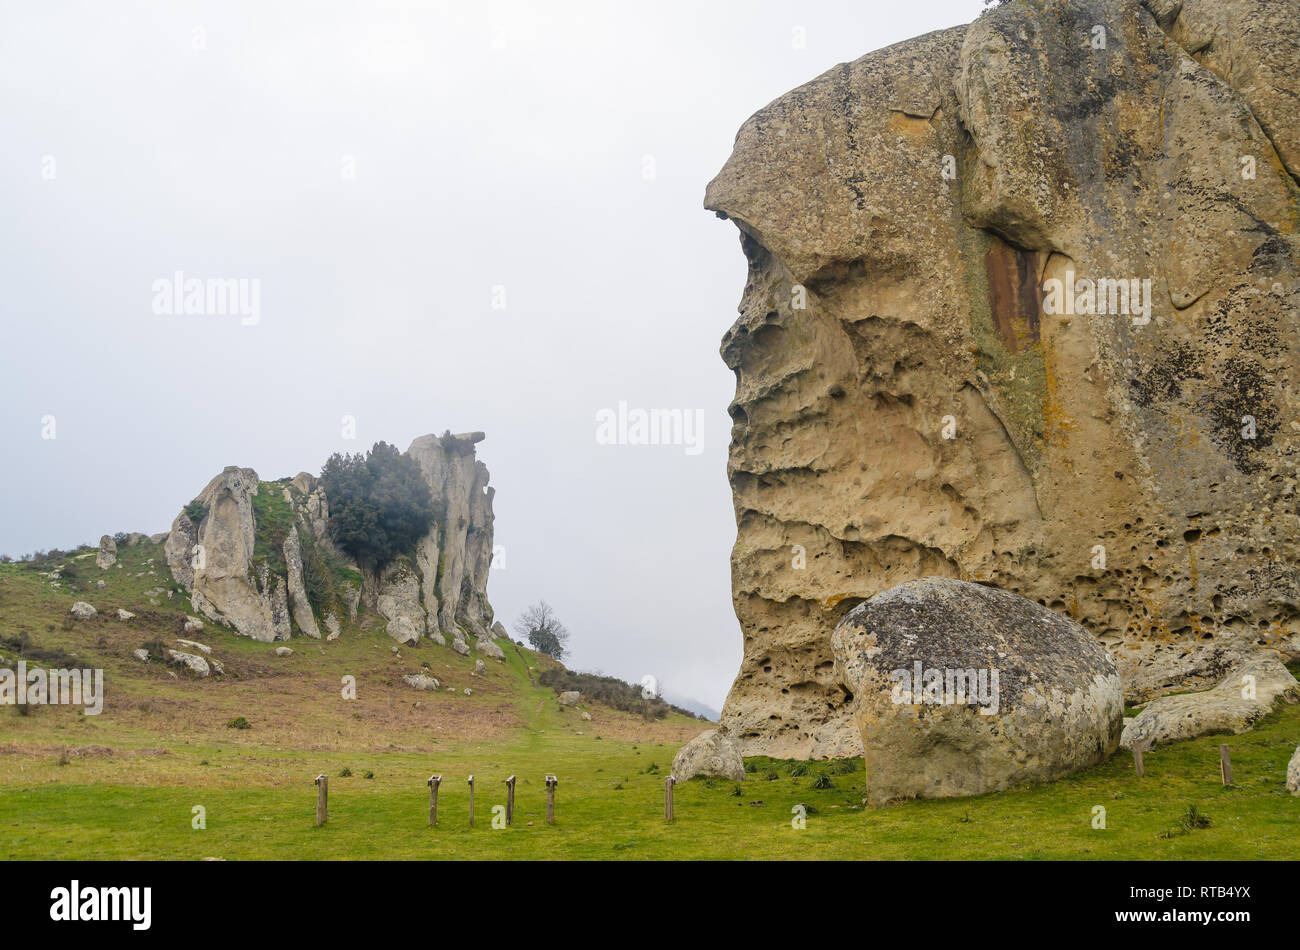 Rock formations of Argimusco near Montalbano Elicona, Sicily Italy Stock Photo